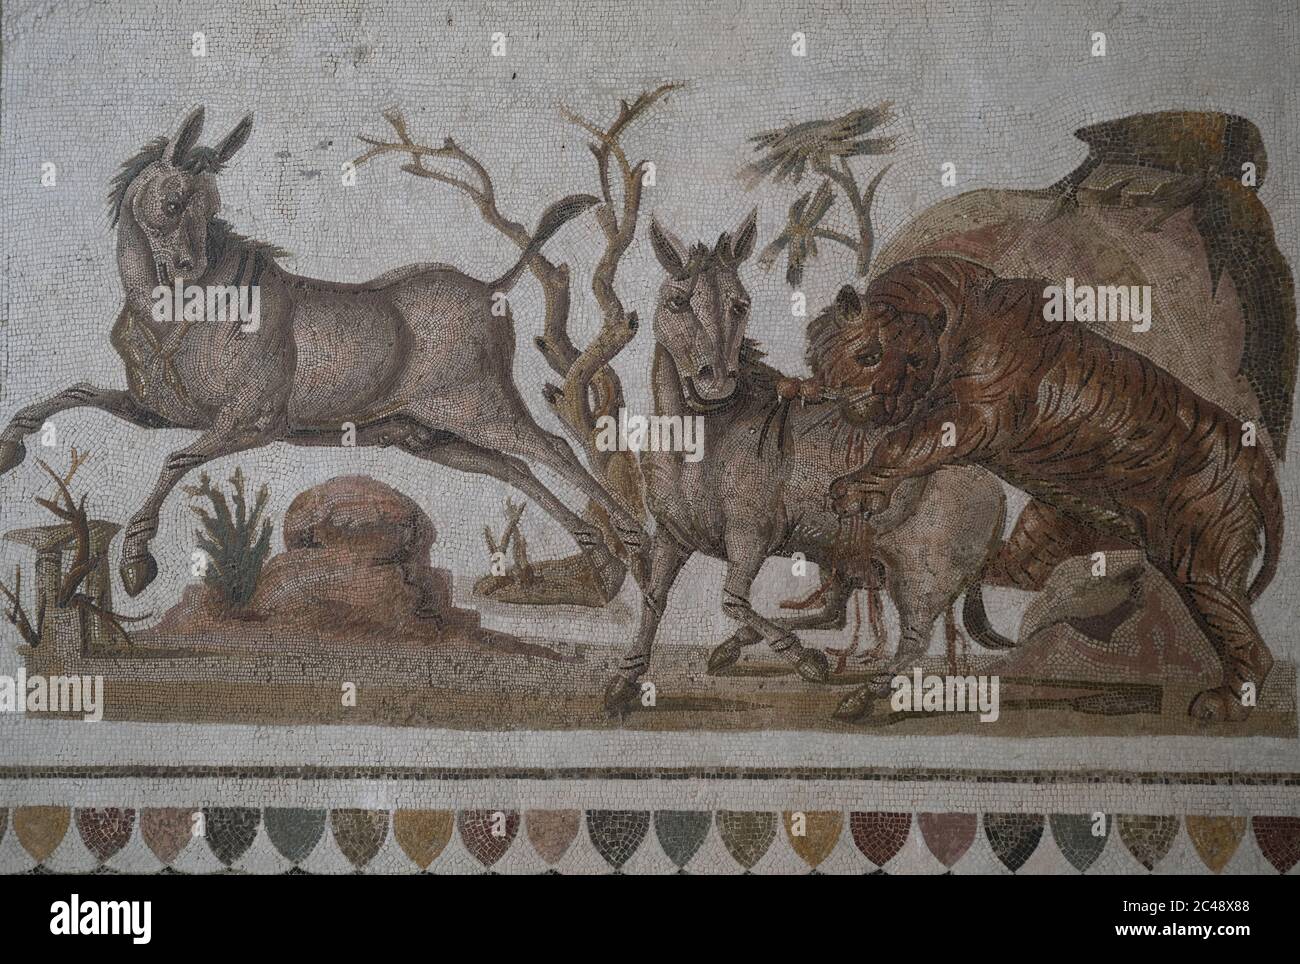 Mosaico romano que data de mediados del siglo II DC alojado en El Museo Arqueológico. Representa a un tigre atacando a dos onagers.el Jem,Túnez Foto de stock